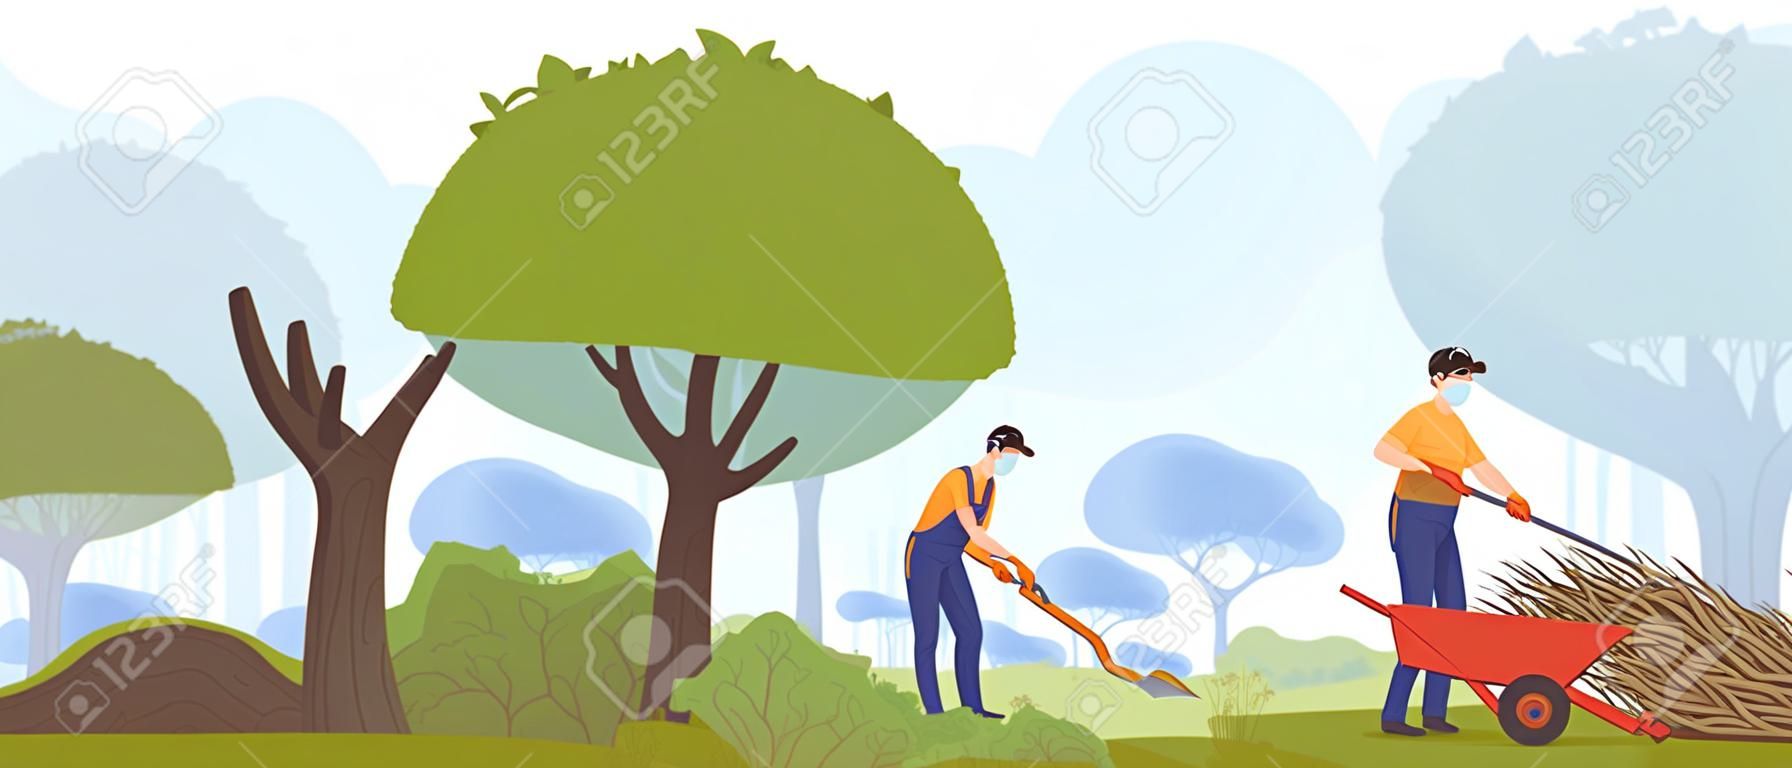 Illustrazione vettoriale di lavoro in giardino, lavoratori giardinieri piatti dei cartoni animati persone che lavorano con macchinari da giardinaggio, taglio di alberi verdi, cespugli di potatura